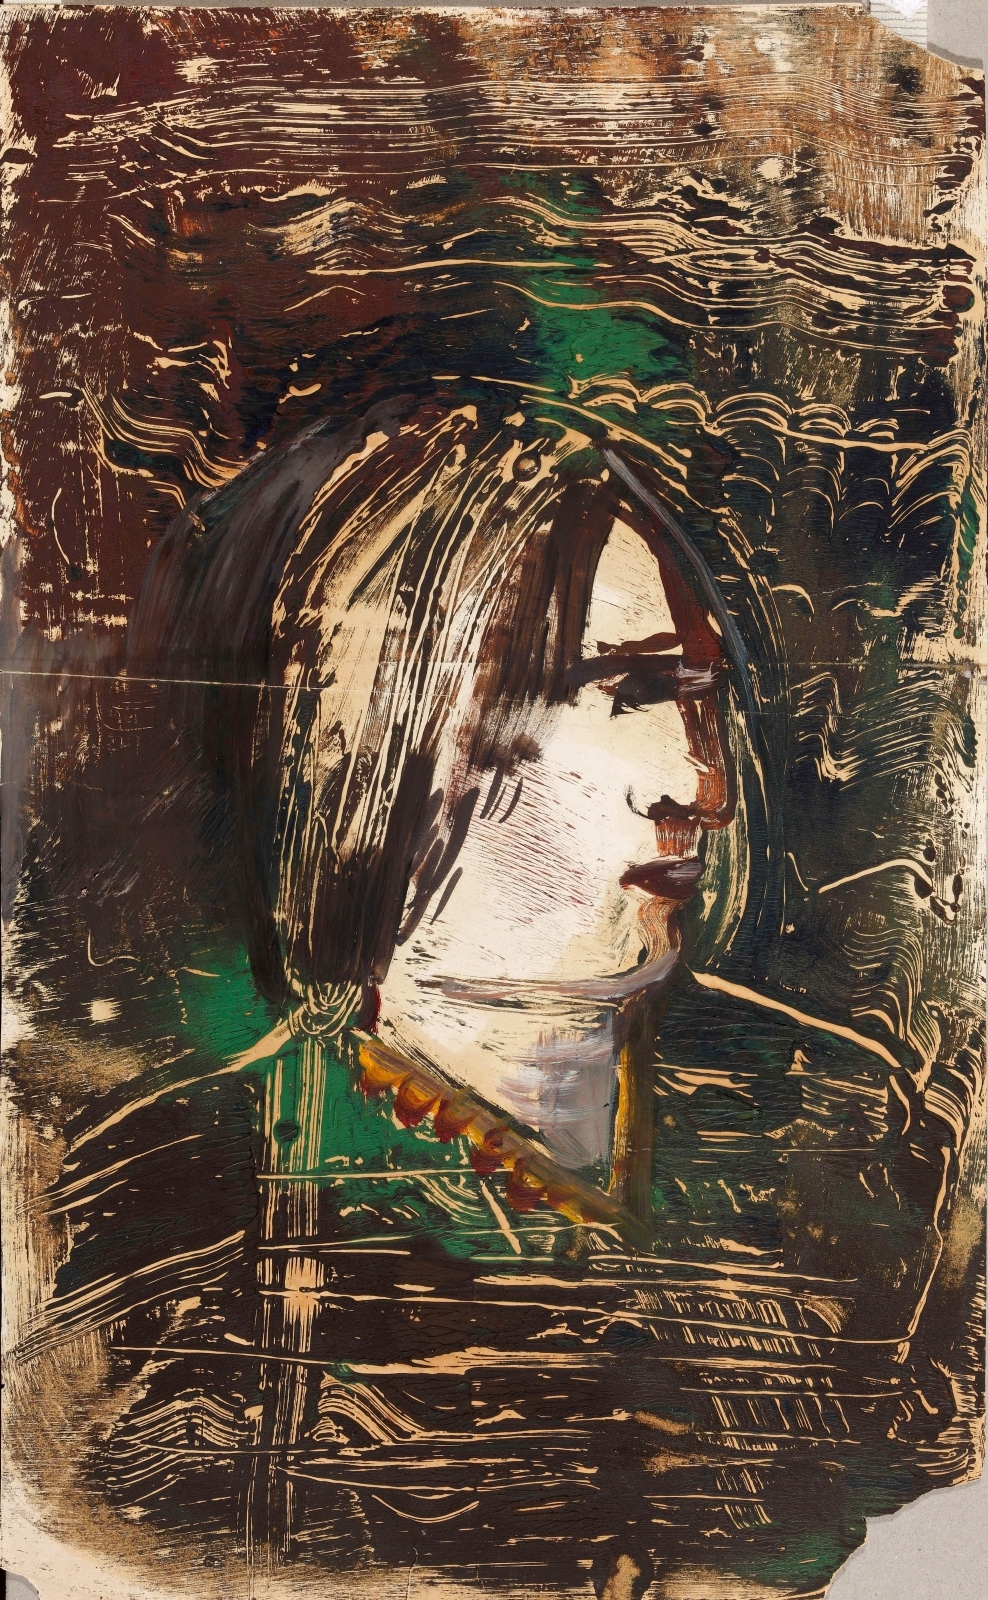  Портрет на коричневом фоне. 1930 